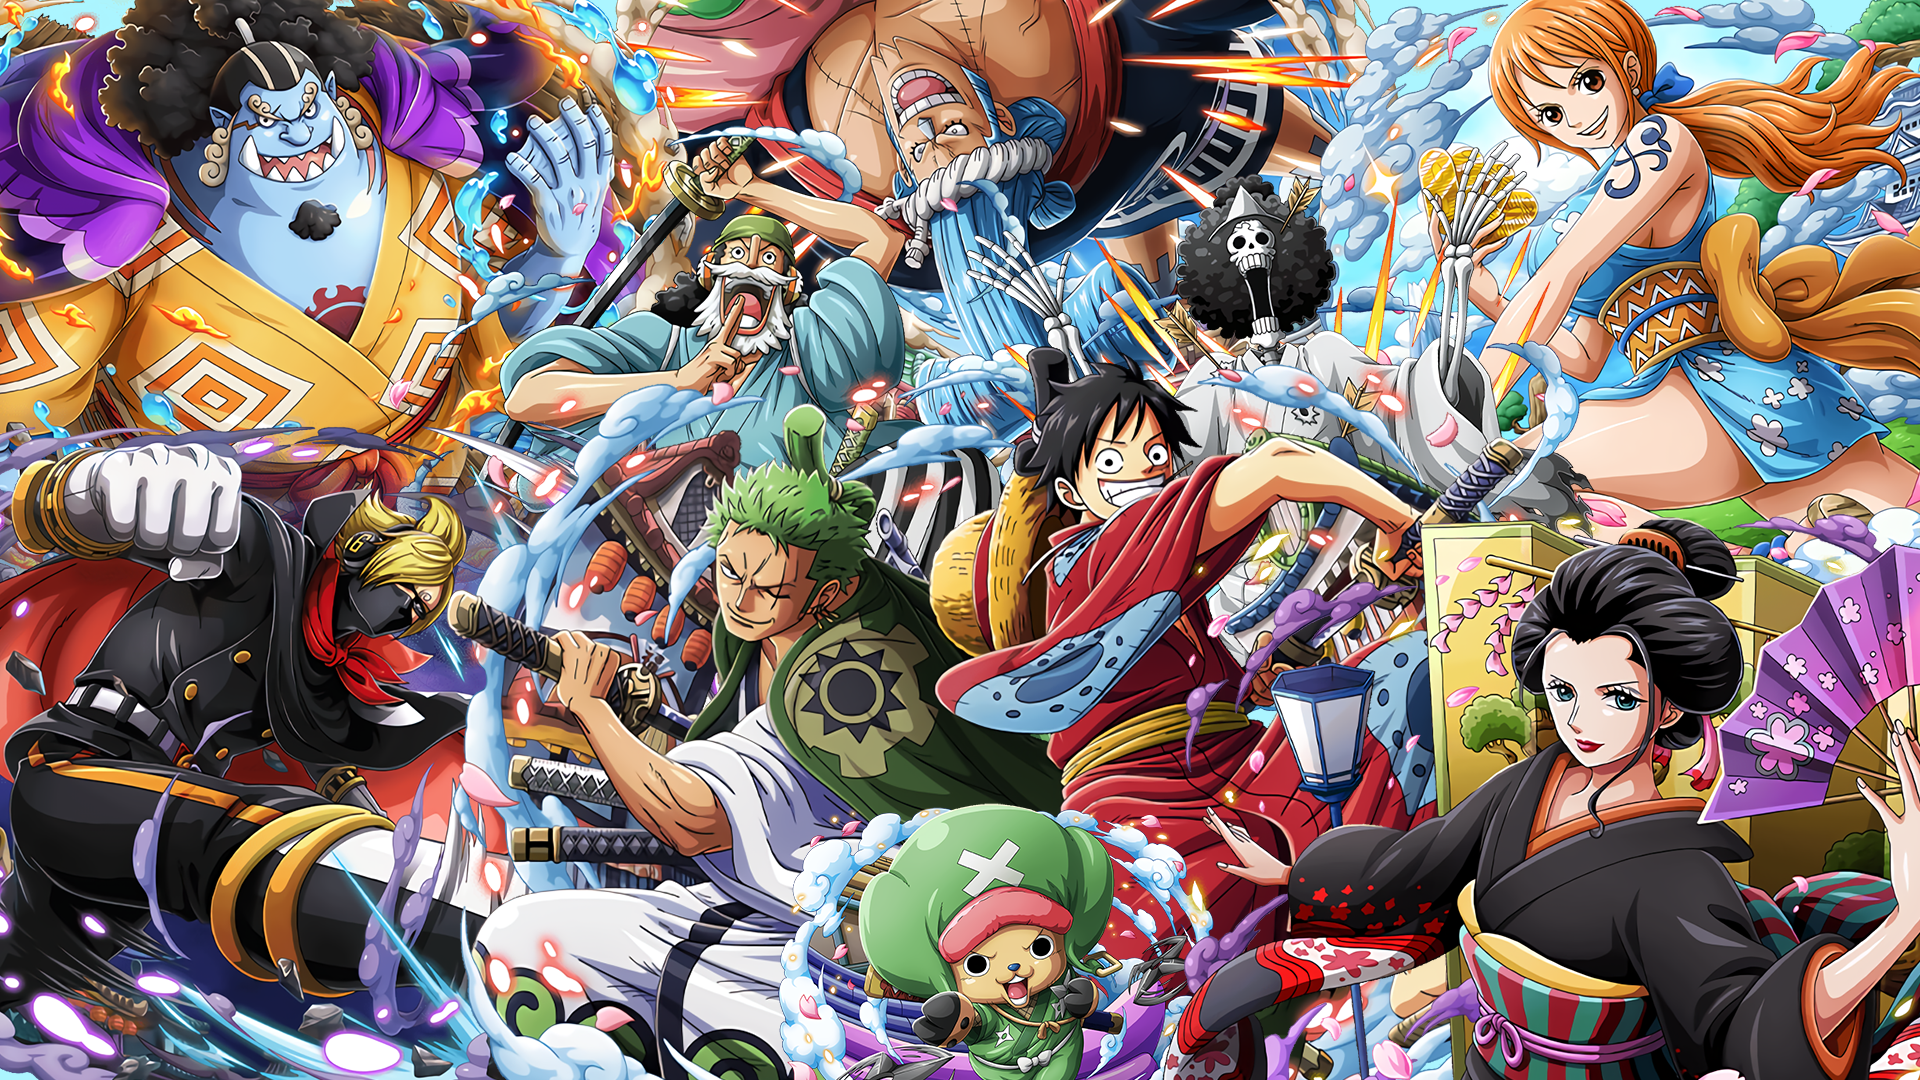 Với hàng trăm tập và nhân vật đầy sức mạnh, One Piece đã chinh phục trái tim của hàng triệu người hâm mộ khắp thế giới. Bạn cũng là một trong số đó? Nếu vậy, hãy chiêm ngưỡng bộ sưu tập One Piece Wallpapers HD đẹp mắt, sắc nét và chất lượng cao hơn bao giờ hết!